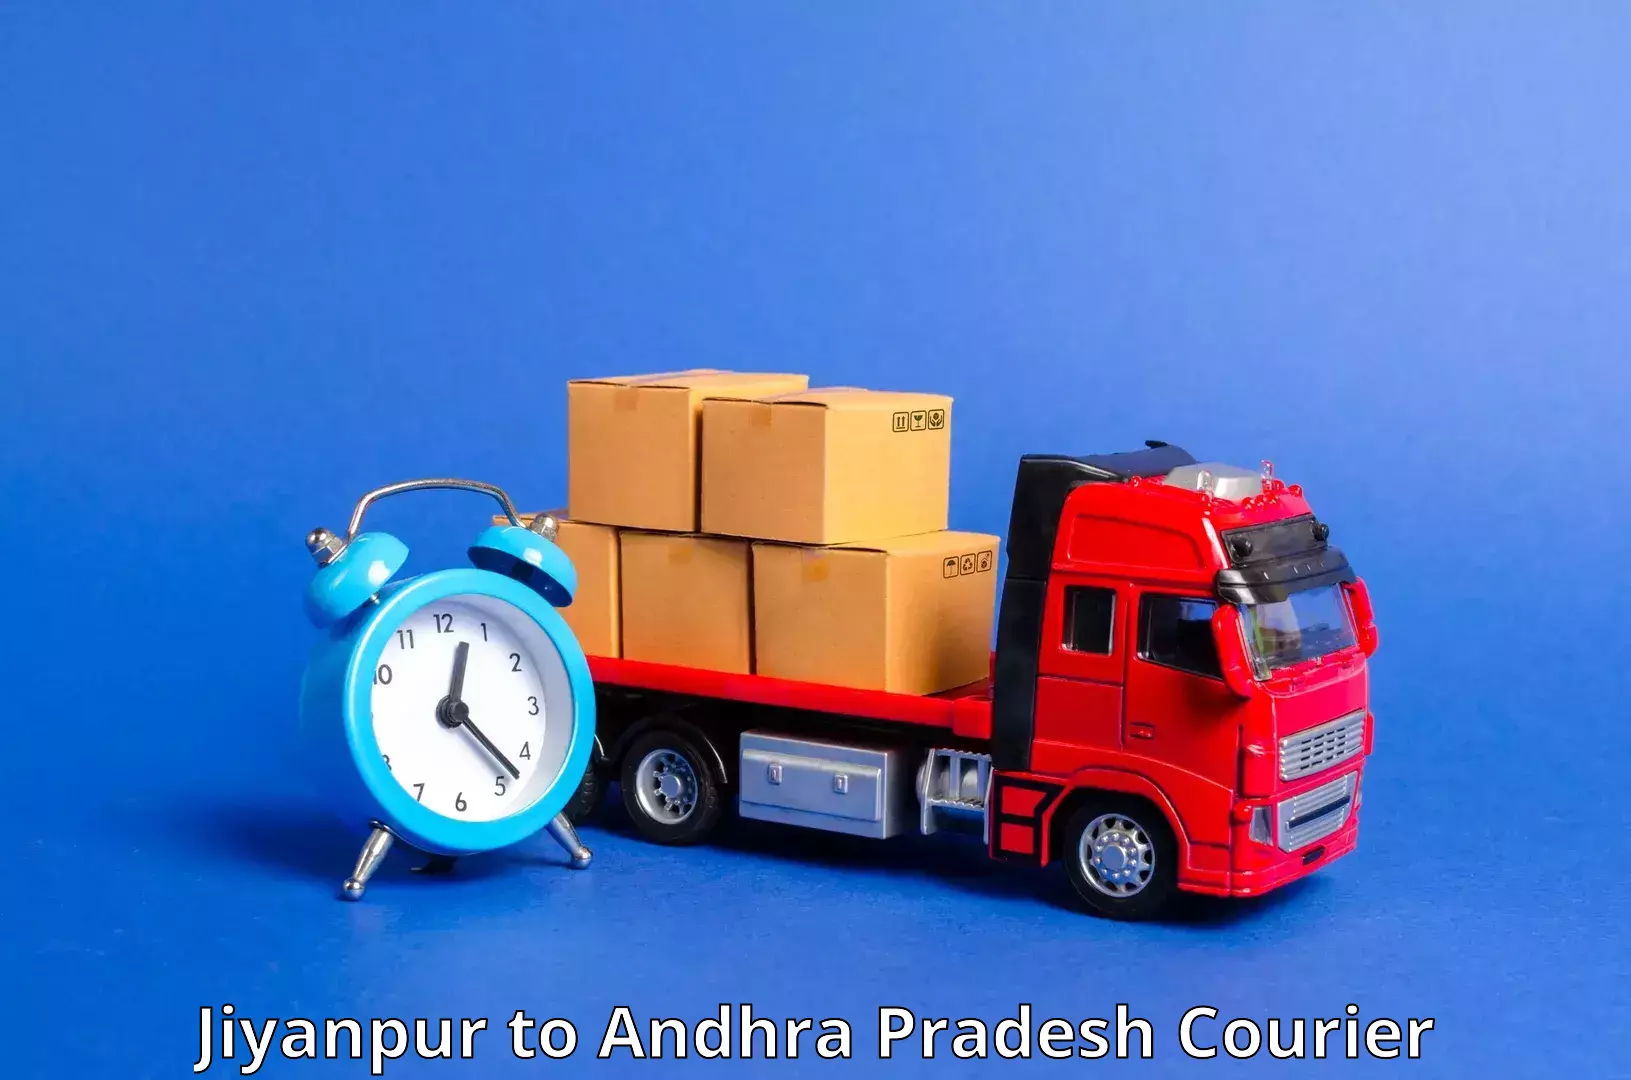 Courier service comparison Jiyanpur to Ponnur